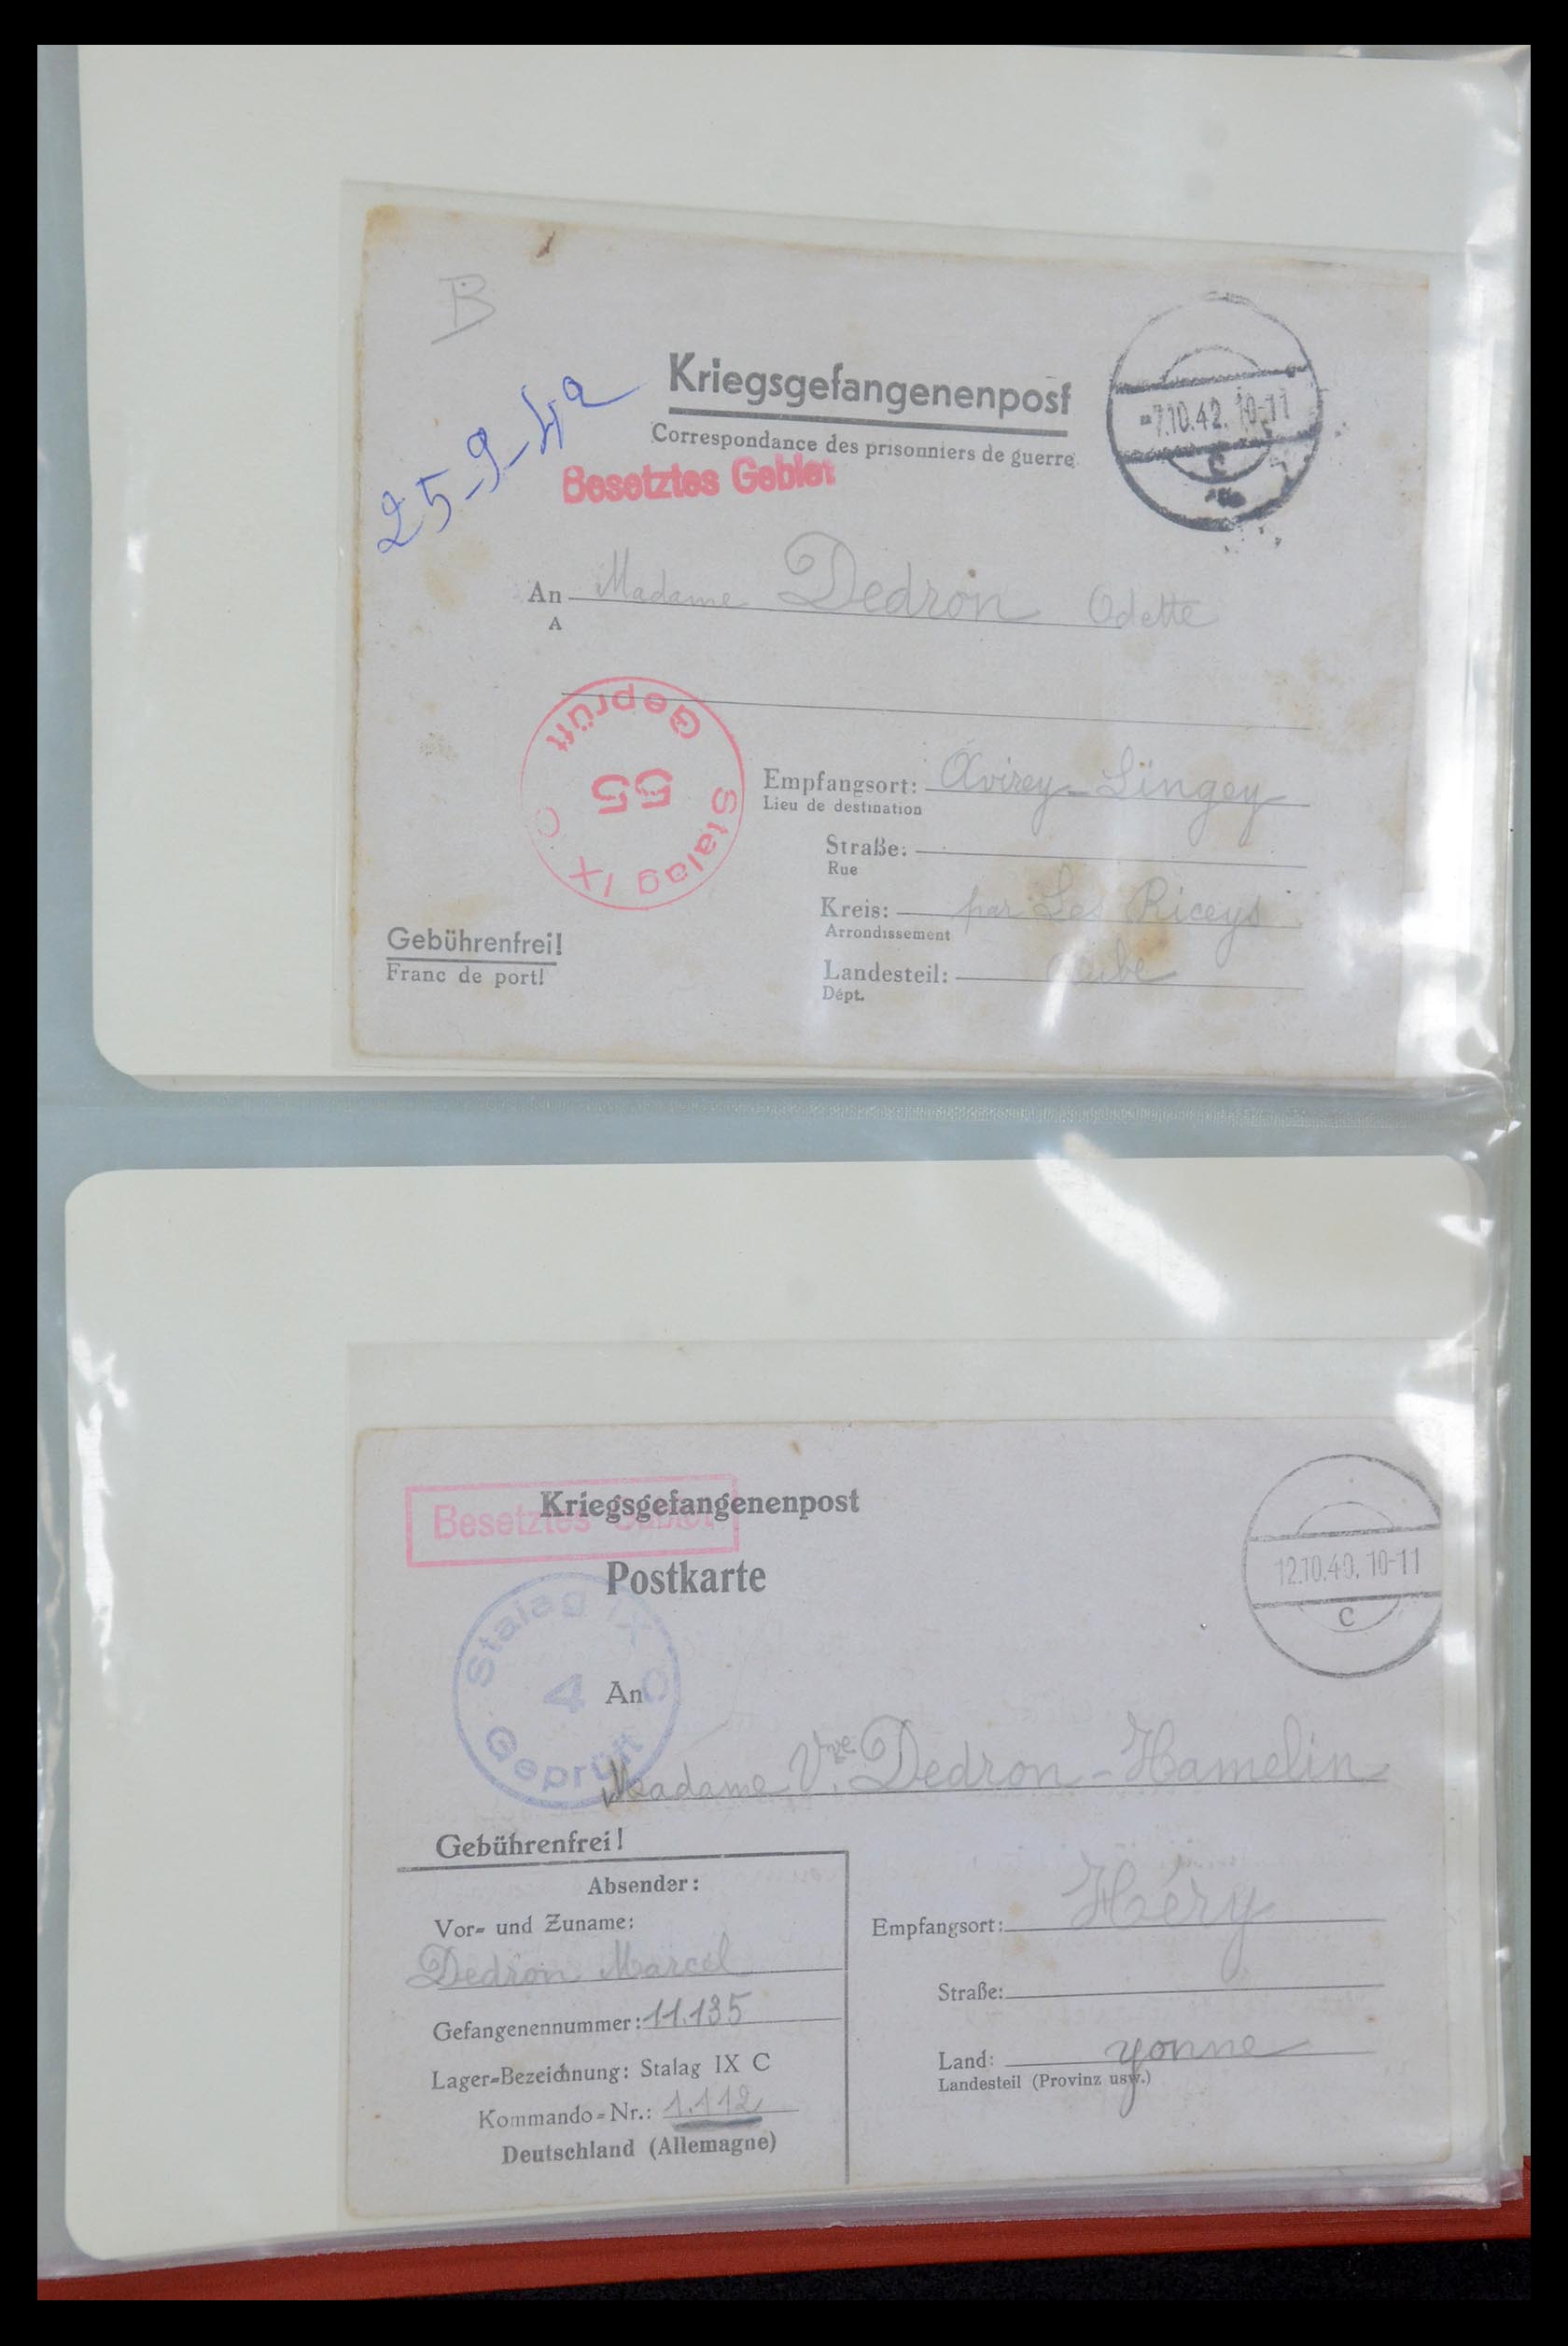 35599 037 - Stamp Collection 35599 Germany prisoner of war cards 1940-1944.